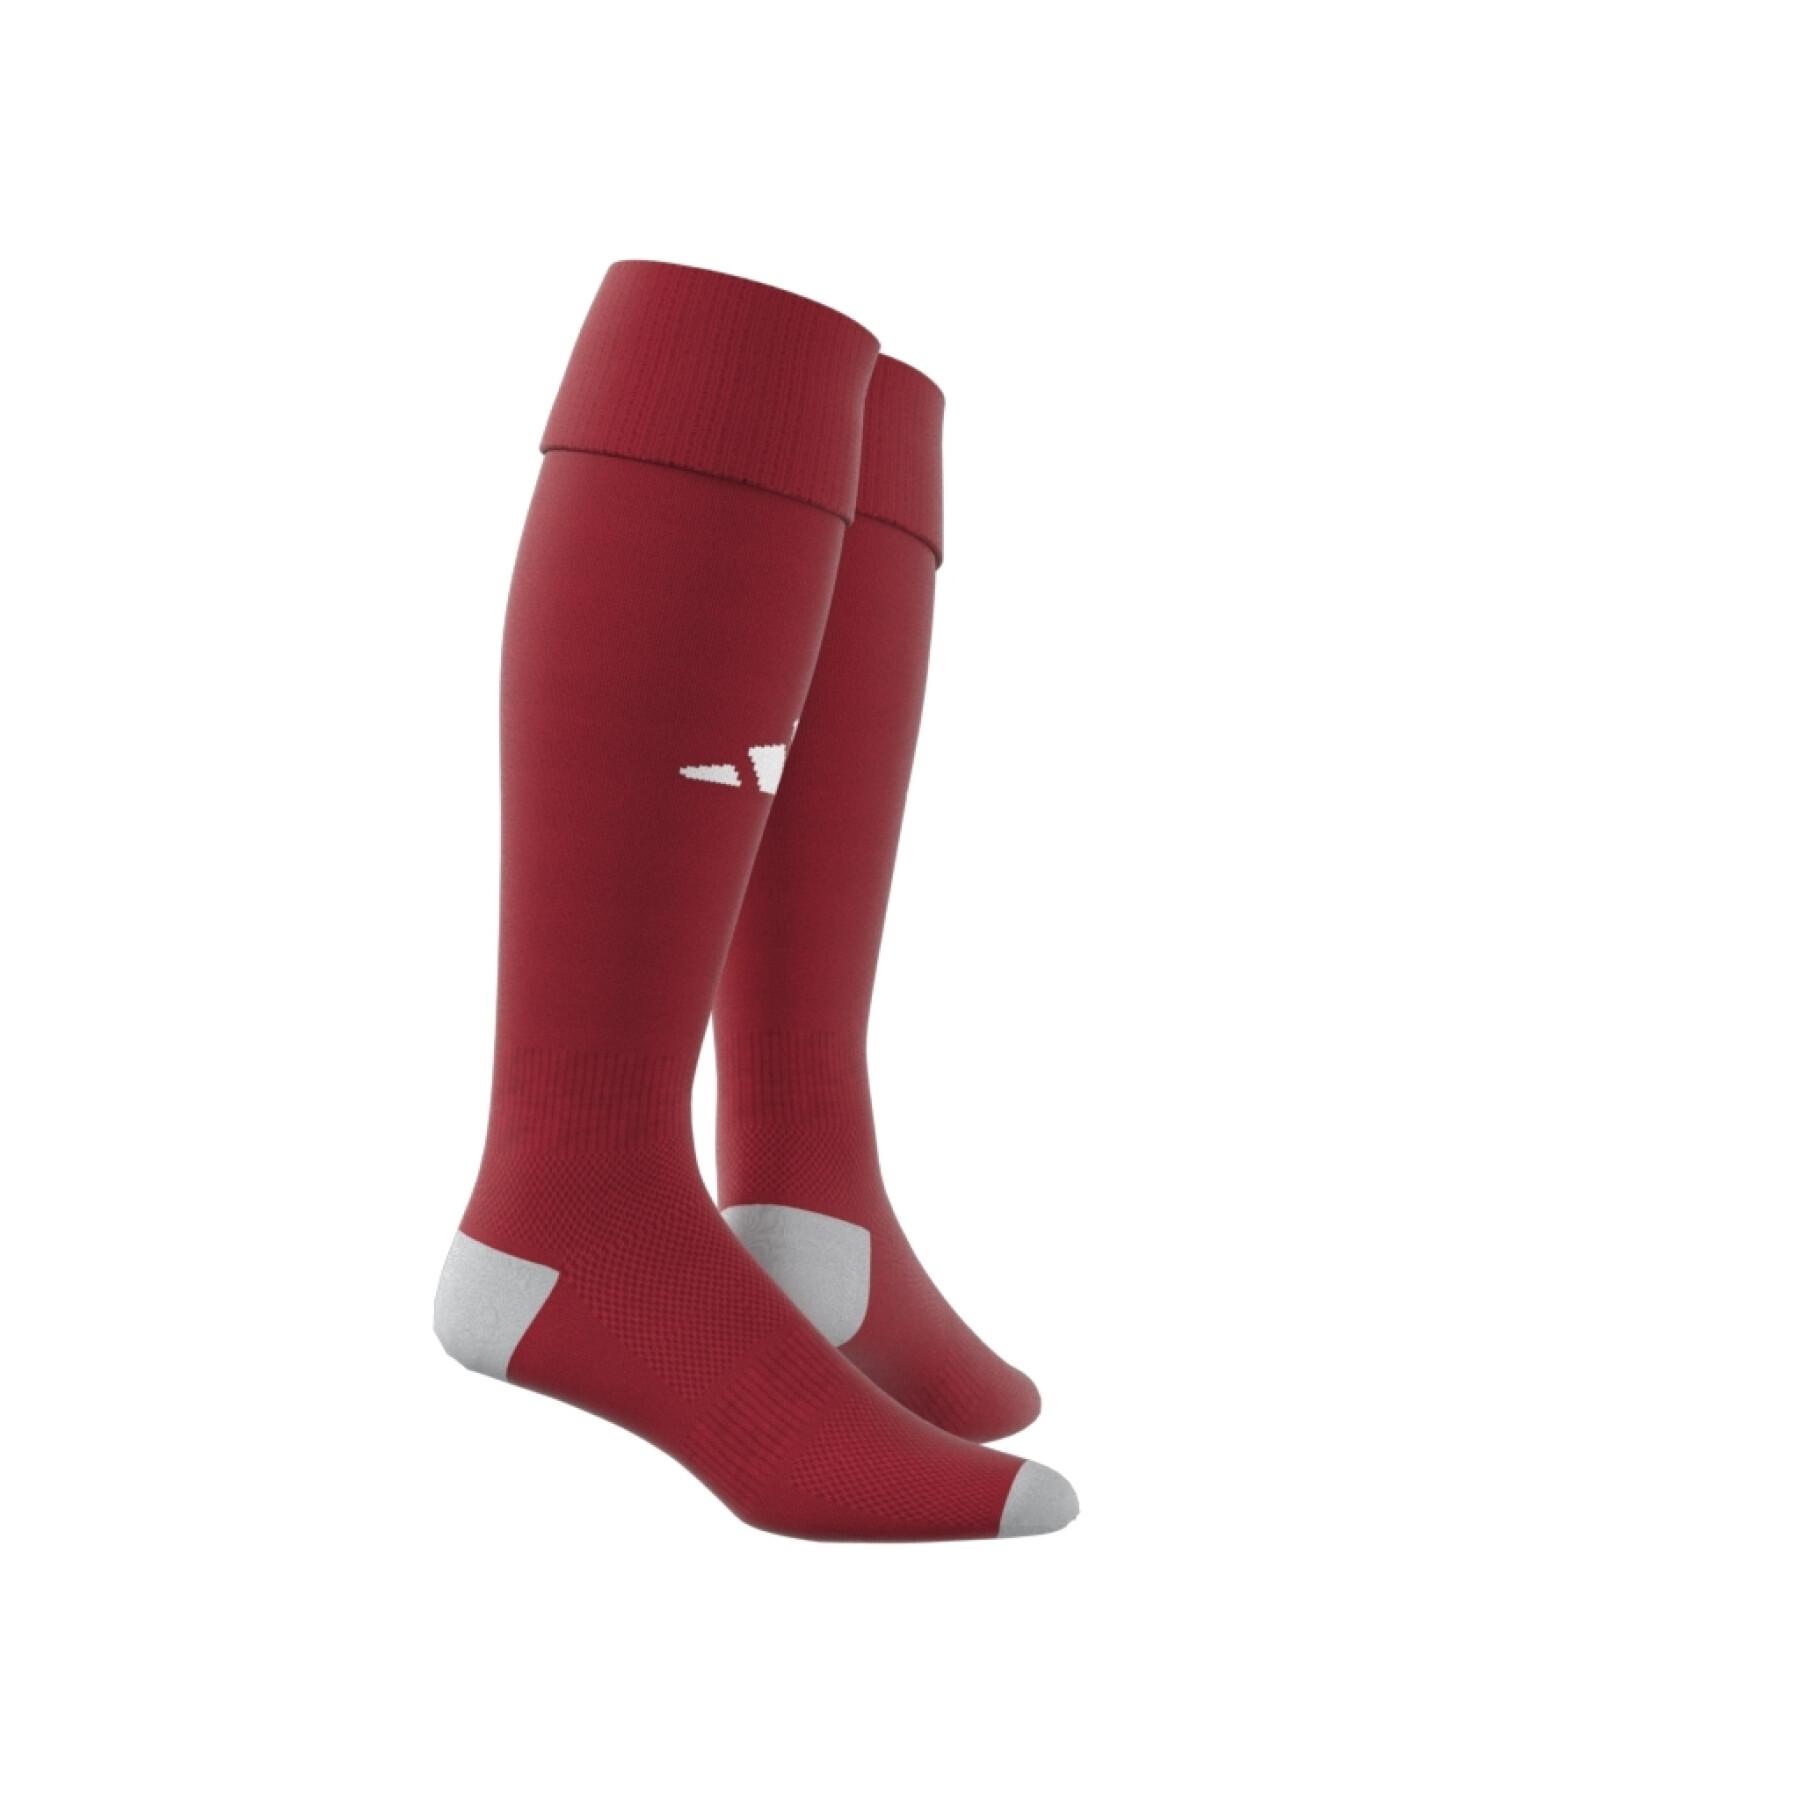 Socks adidas Milano 23 - Socks - Accessories - Teamwear